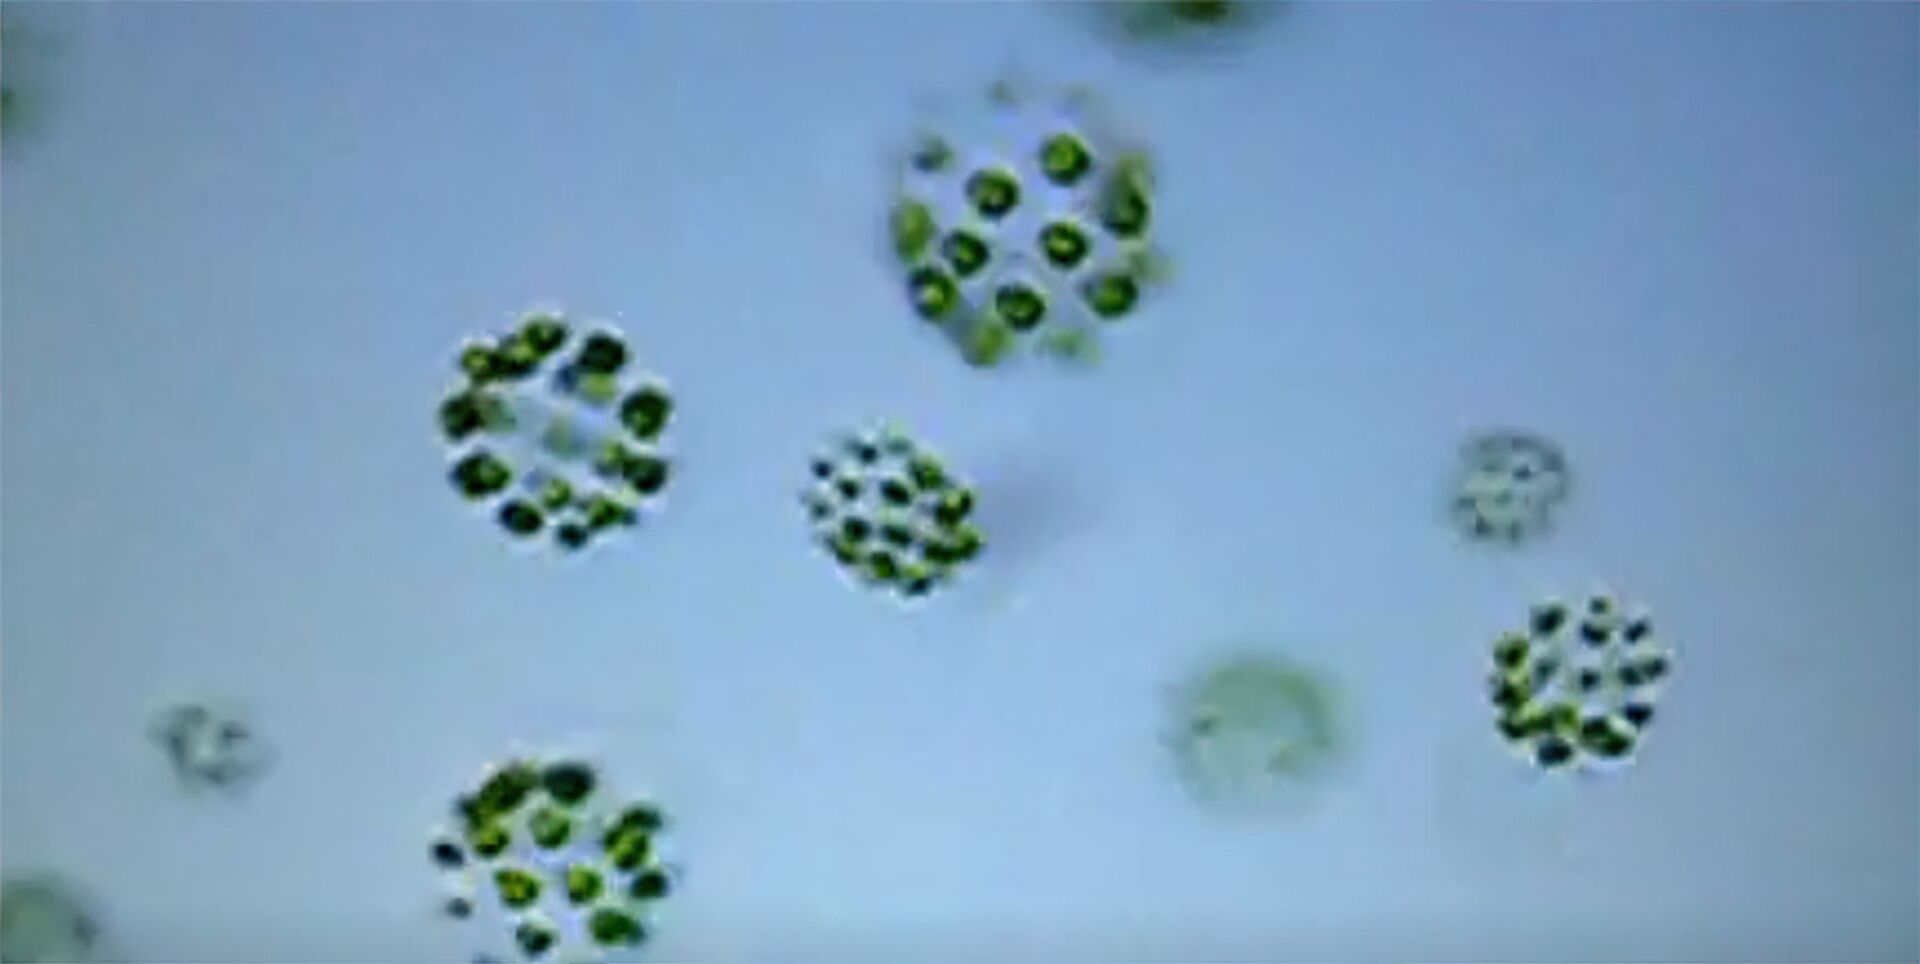 Planta trissexual? Cientistas estudam espécie de alga com 3 sexos diferentes - Sputnik Brasil, 1920, 15.07.2021